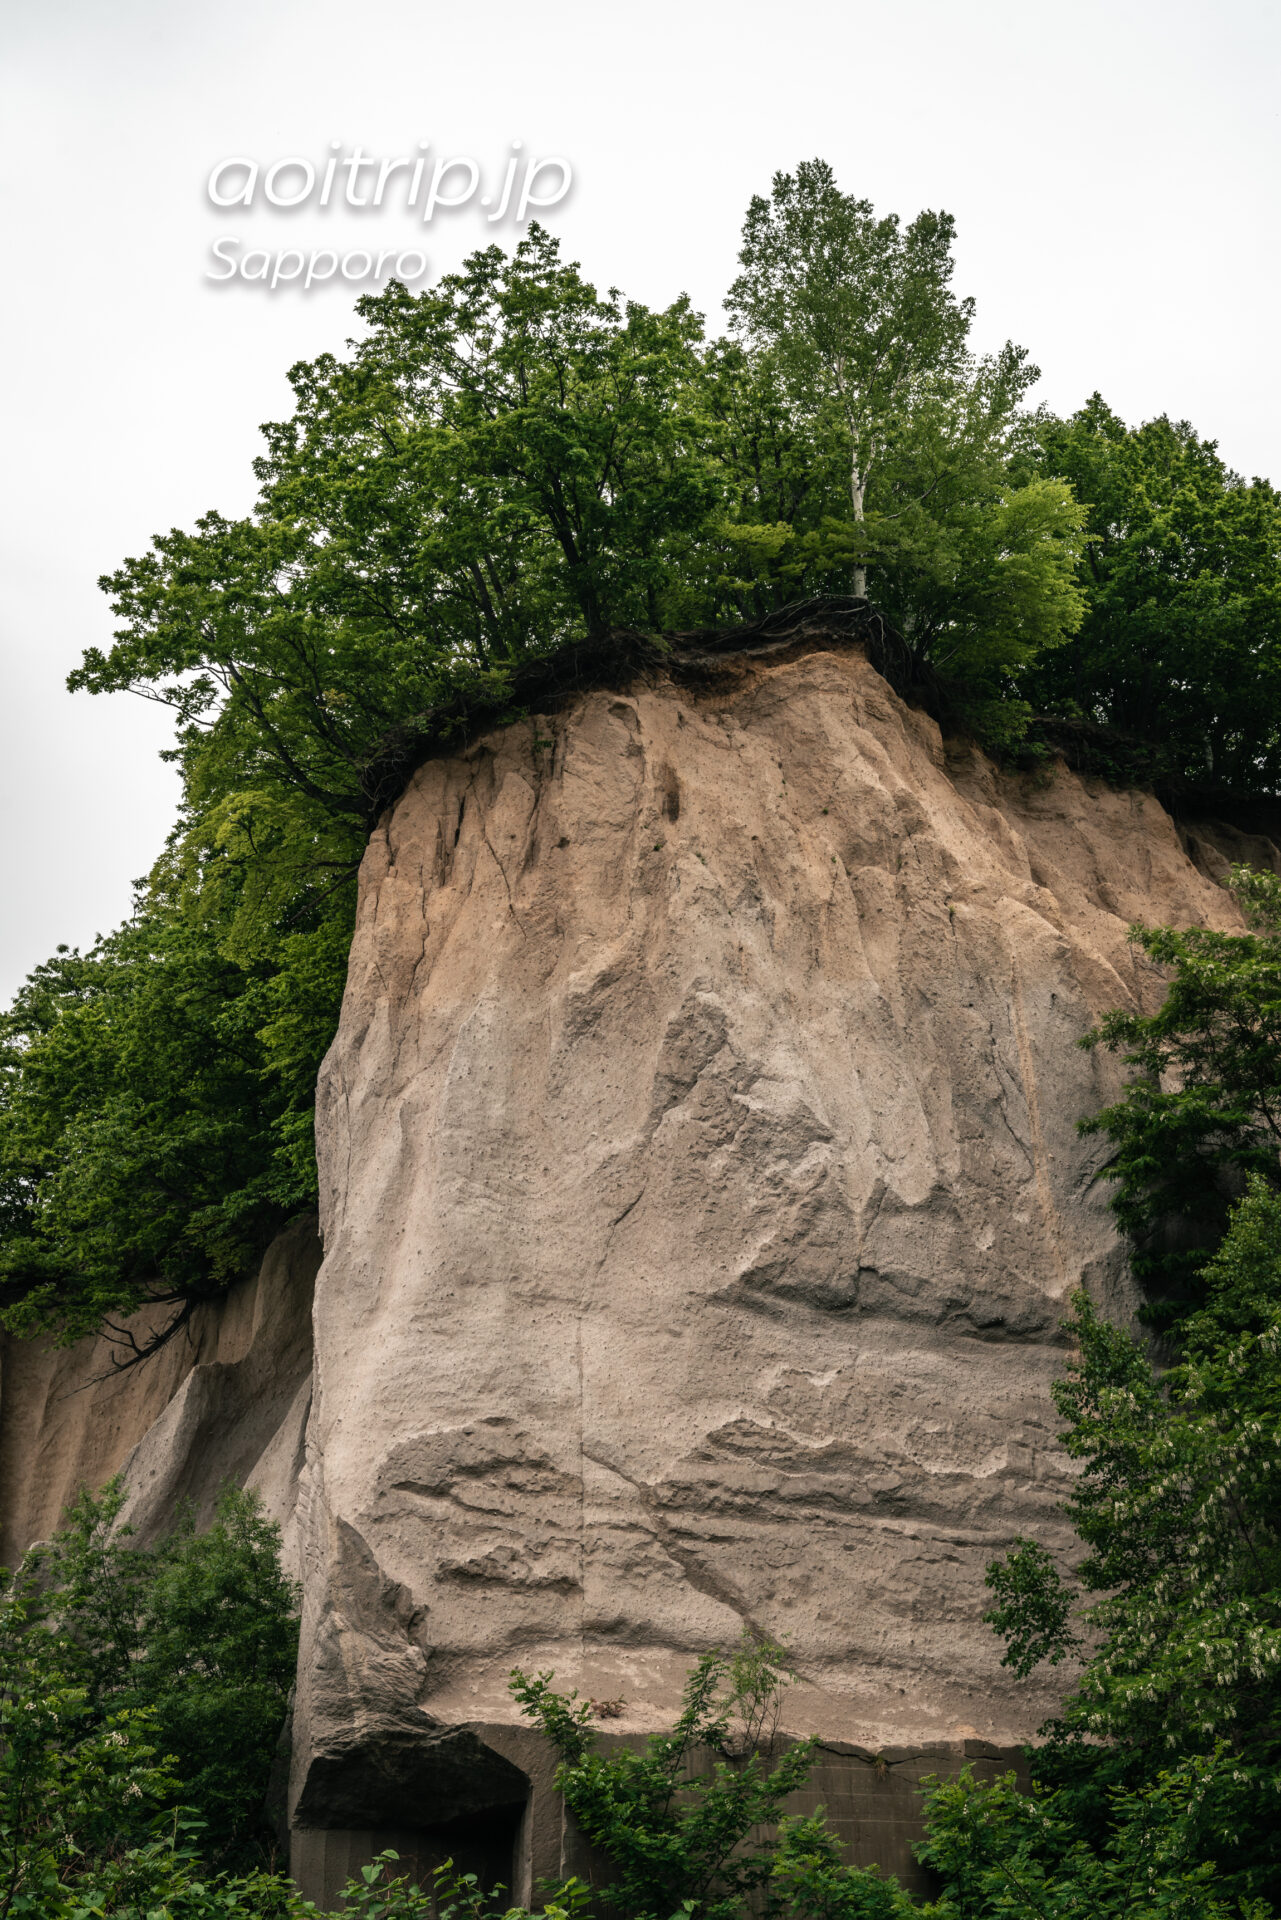 札幌 石山緑地にある溶結凝灰岩の露頭